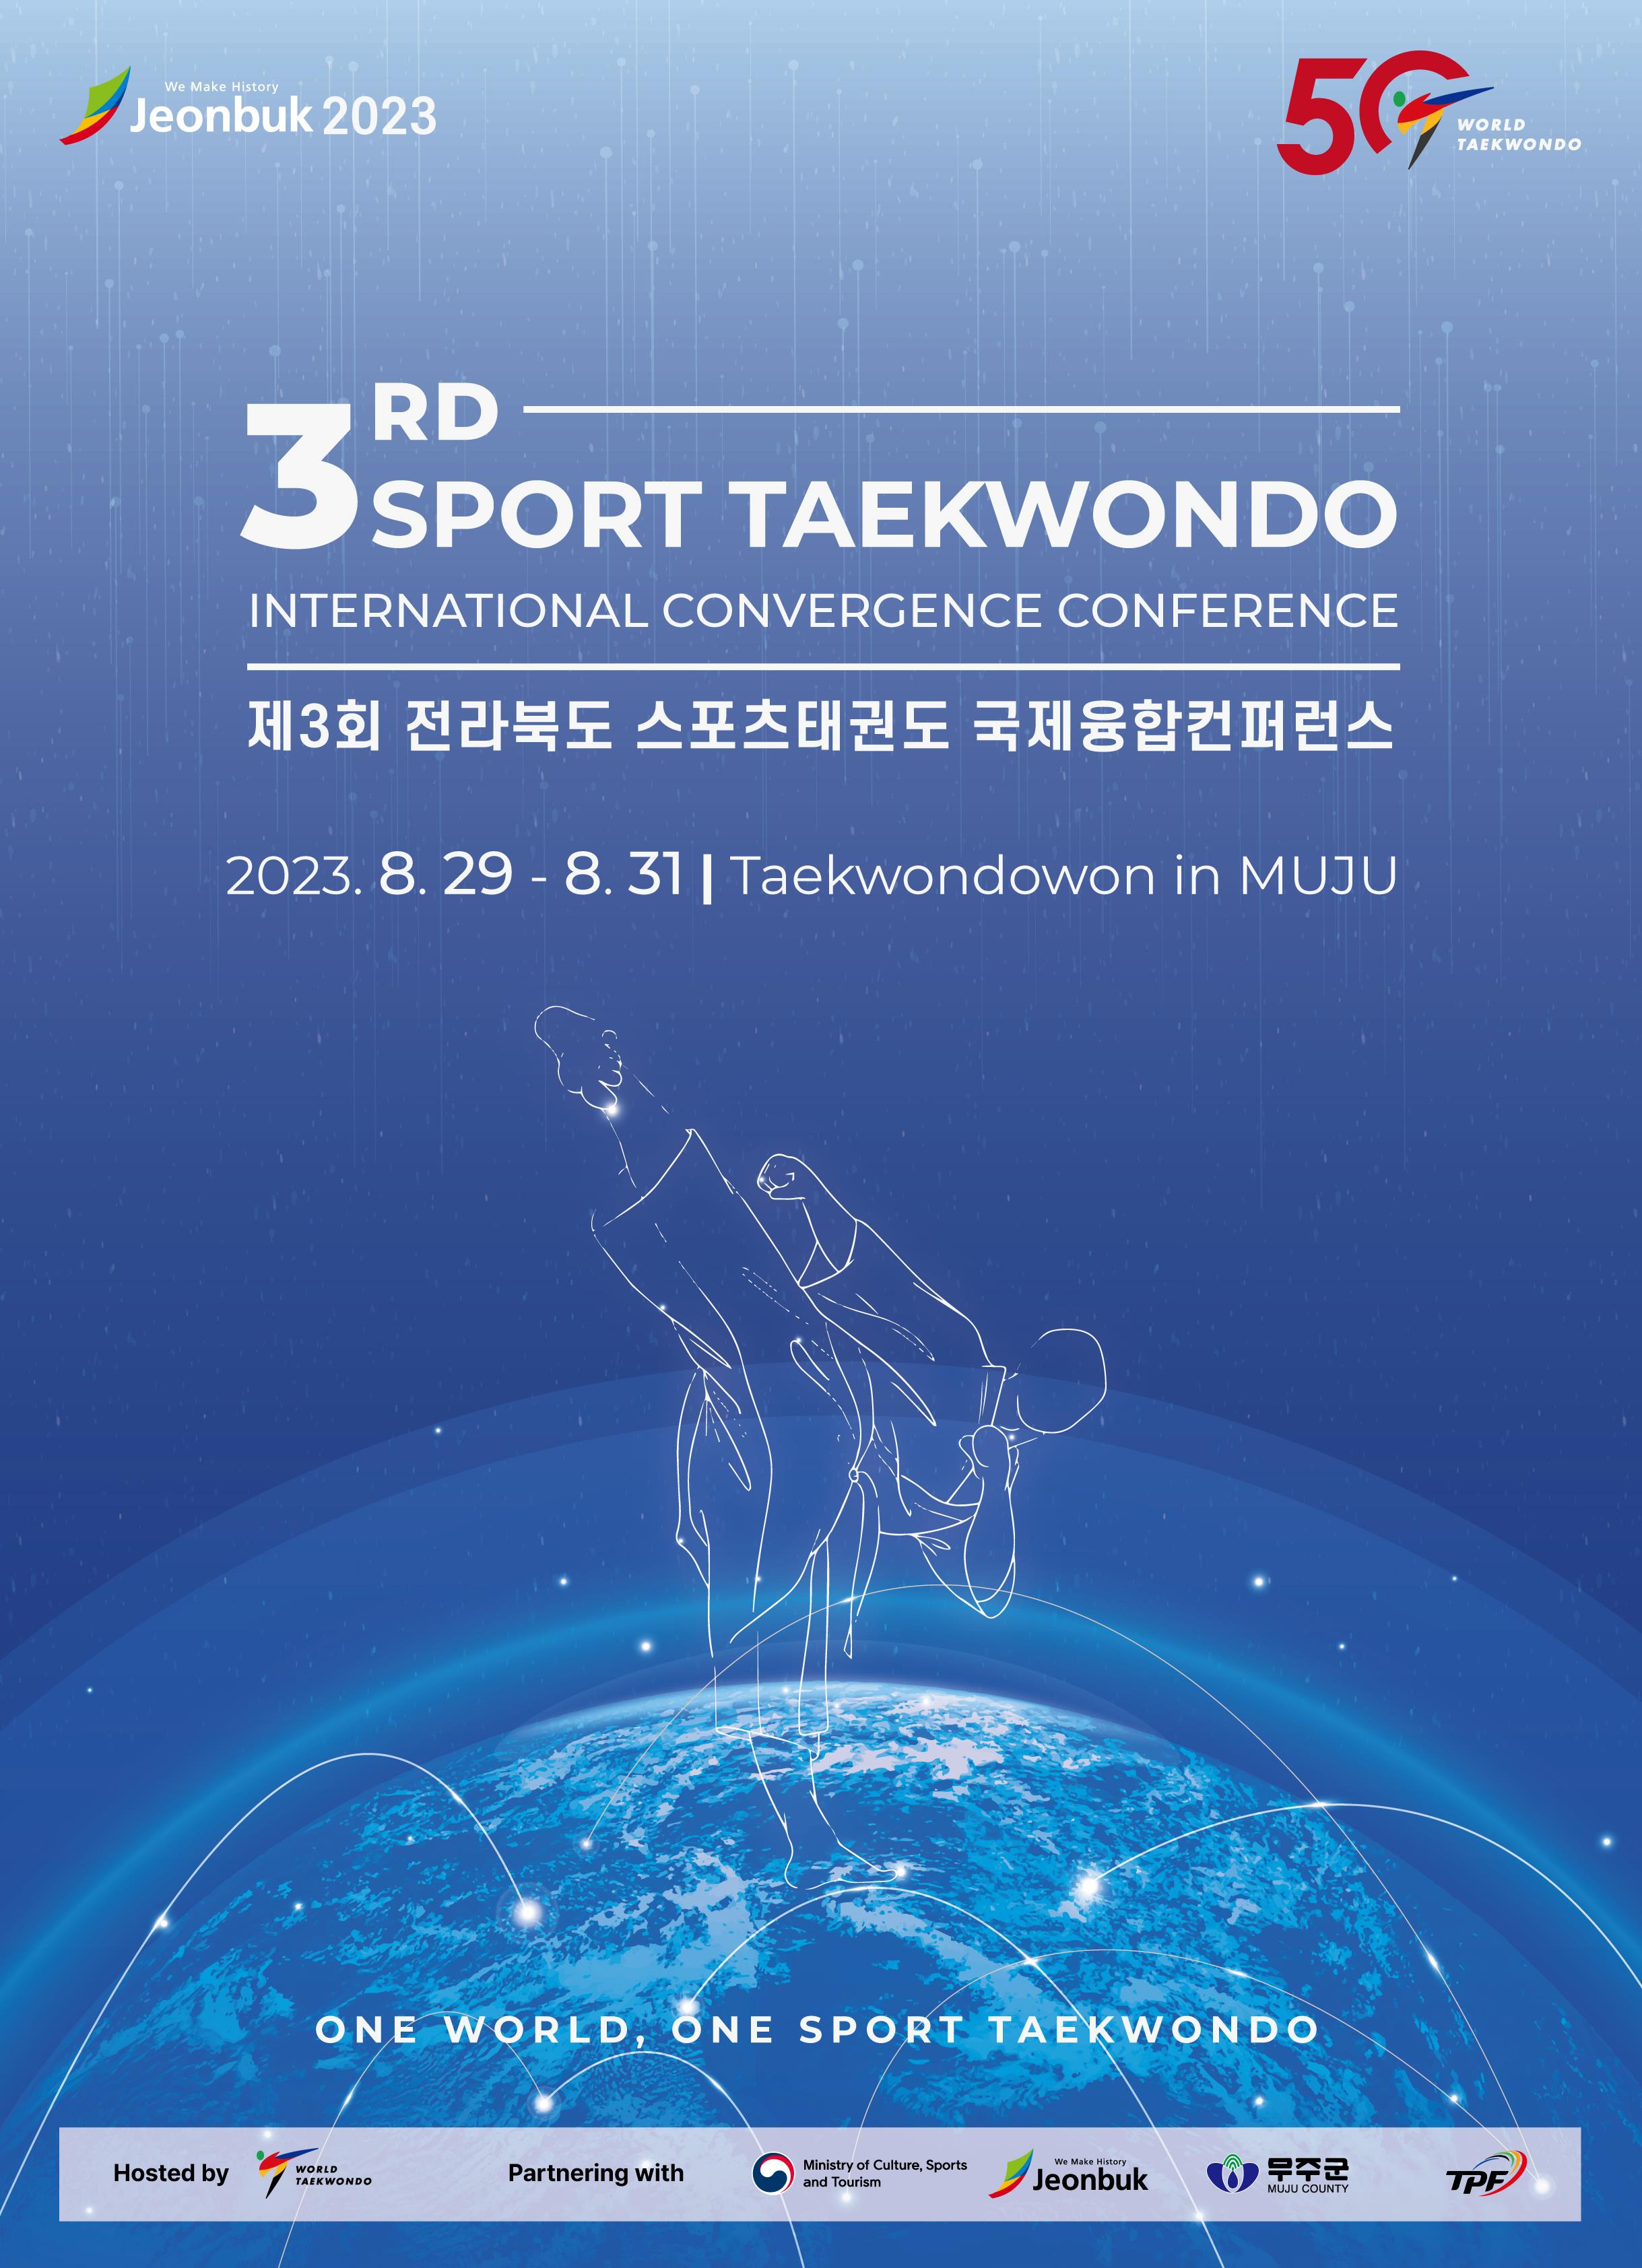 2023 Jeollabuk-do Sports Taekwon -do global Amalgation Conference Held image(1)